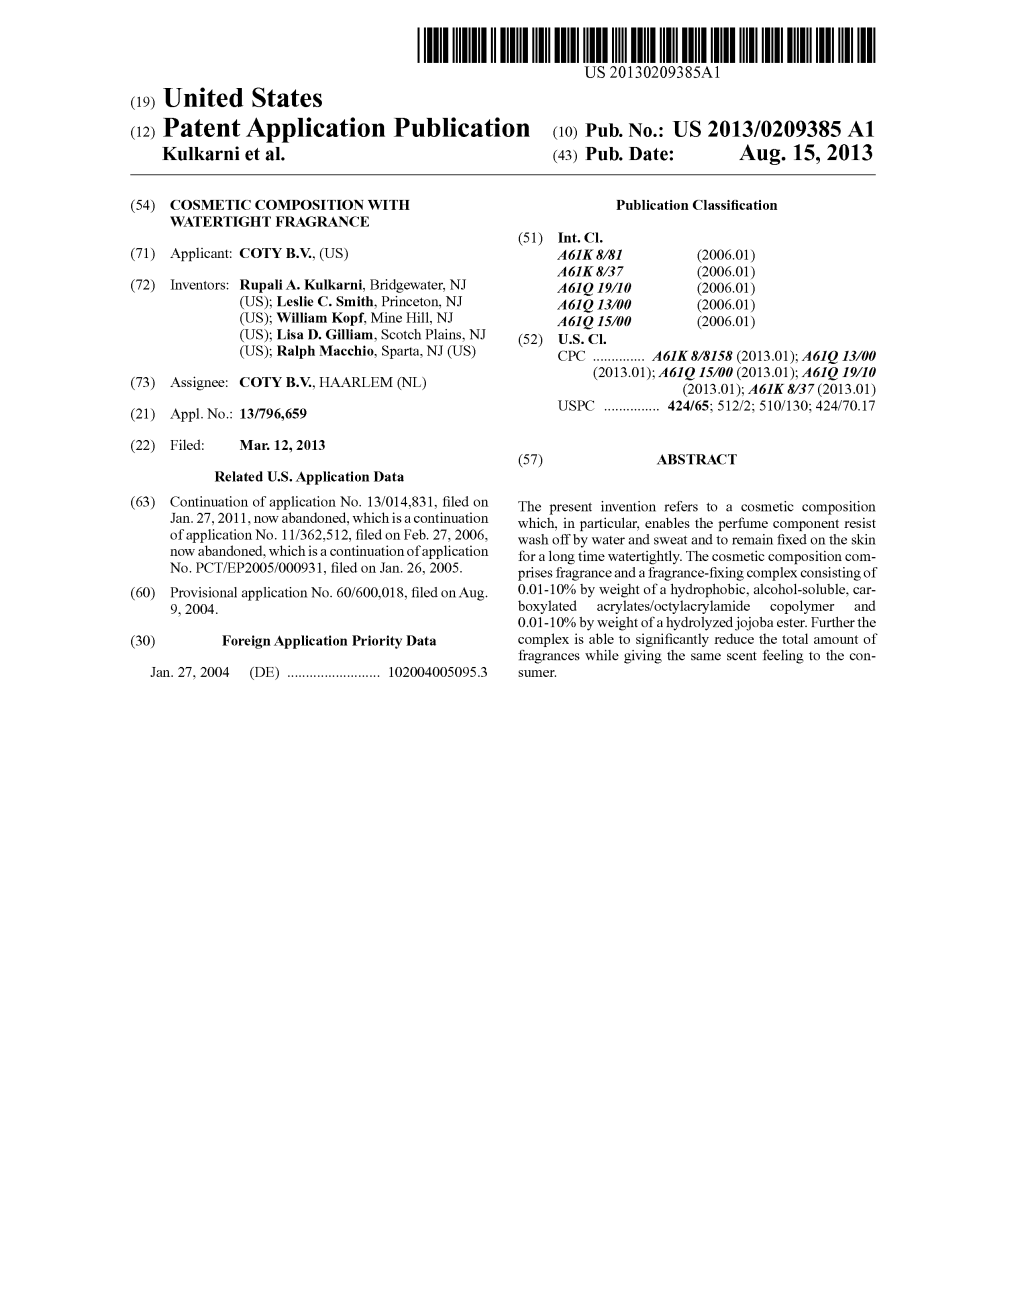 (12) Patent Application Publication (10) Pub. No.: US 2013/0209385 A1 Kulkarni Et Al